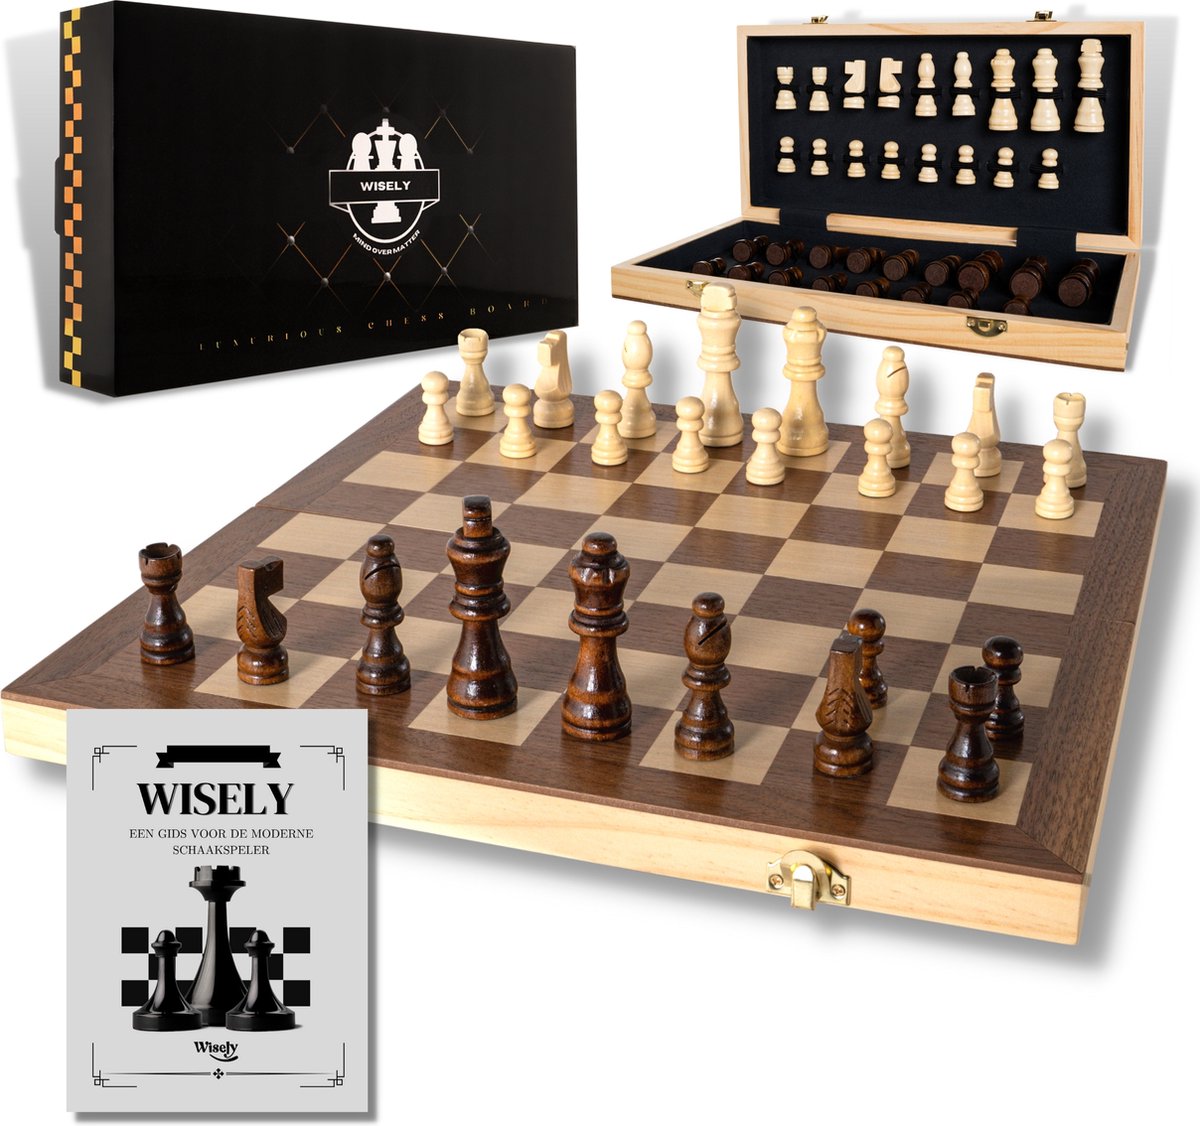 Wisely - Luxe Schaakspel - Schaakset XL - Schaken - Schaakbord Met Schaakstukken - Chess - Inclusief Boekje met Schaakstrategieën - Extra Koningin - Hout - Inklapbaar - 38cm bij 38cm - Wisely